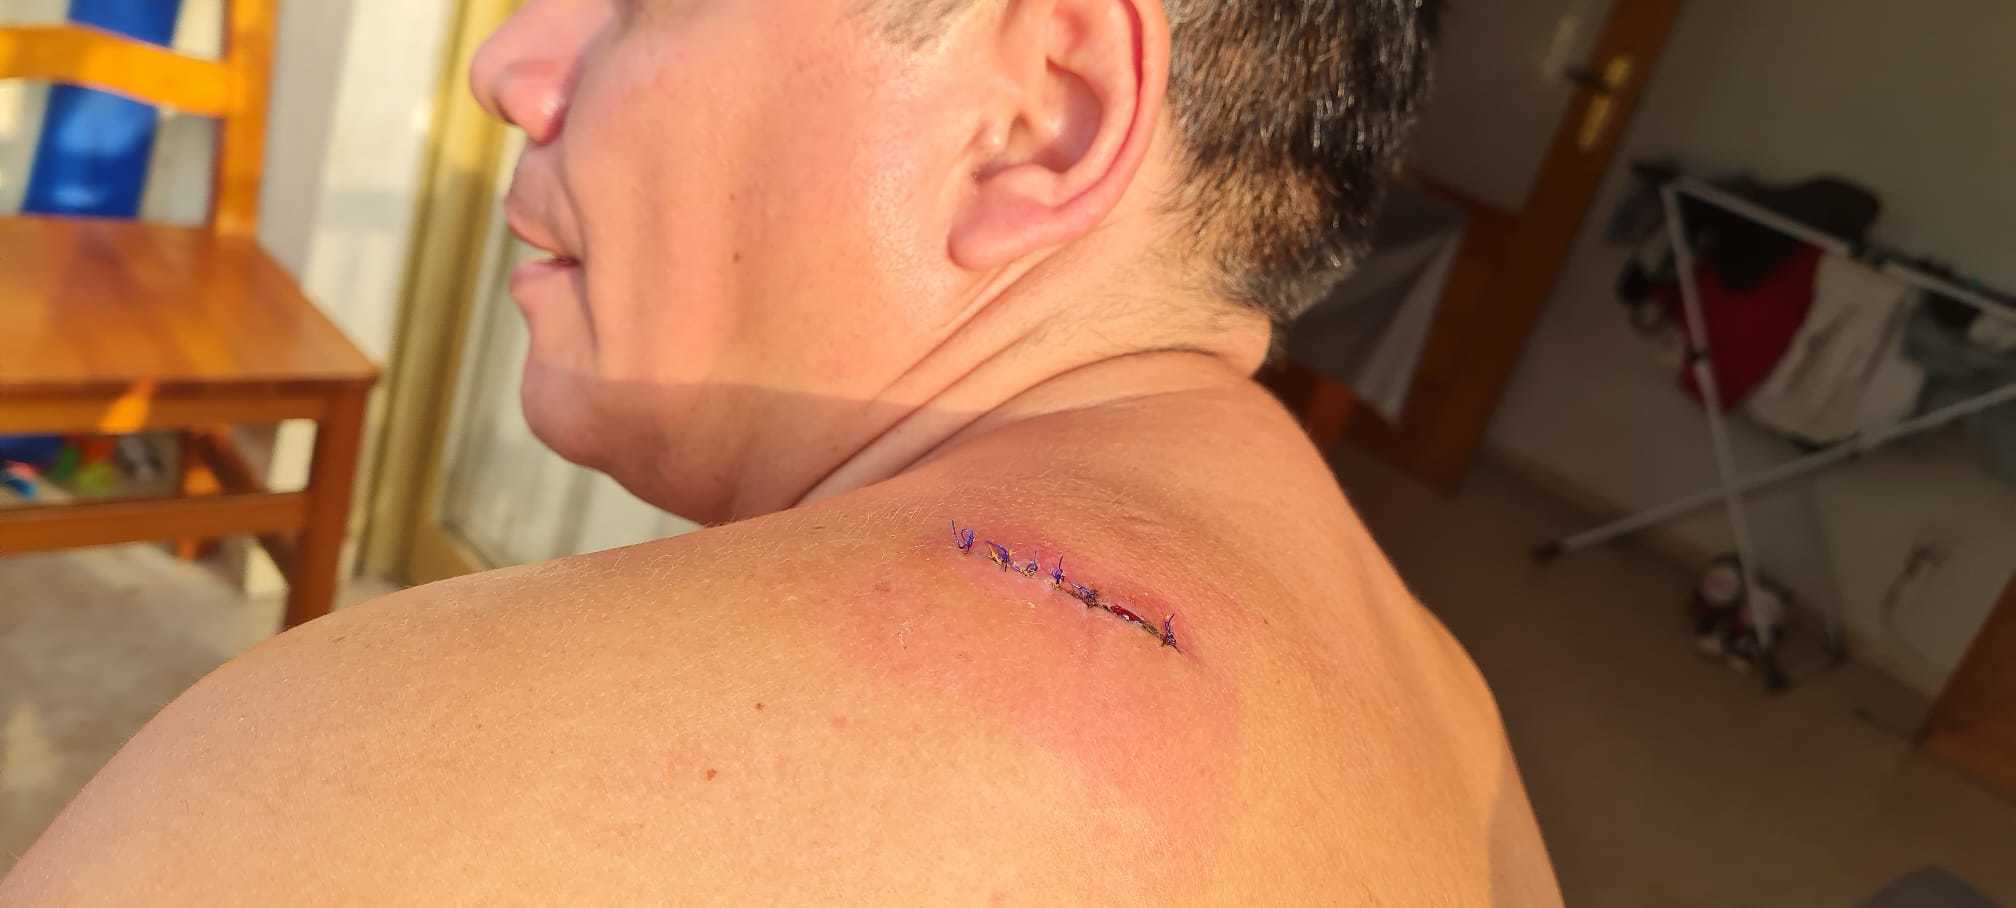 La herida provocada en el omplato de Jorge tras ser acuchillado